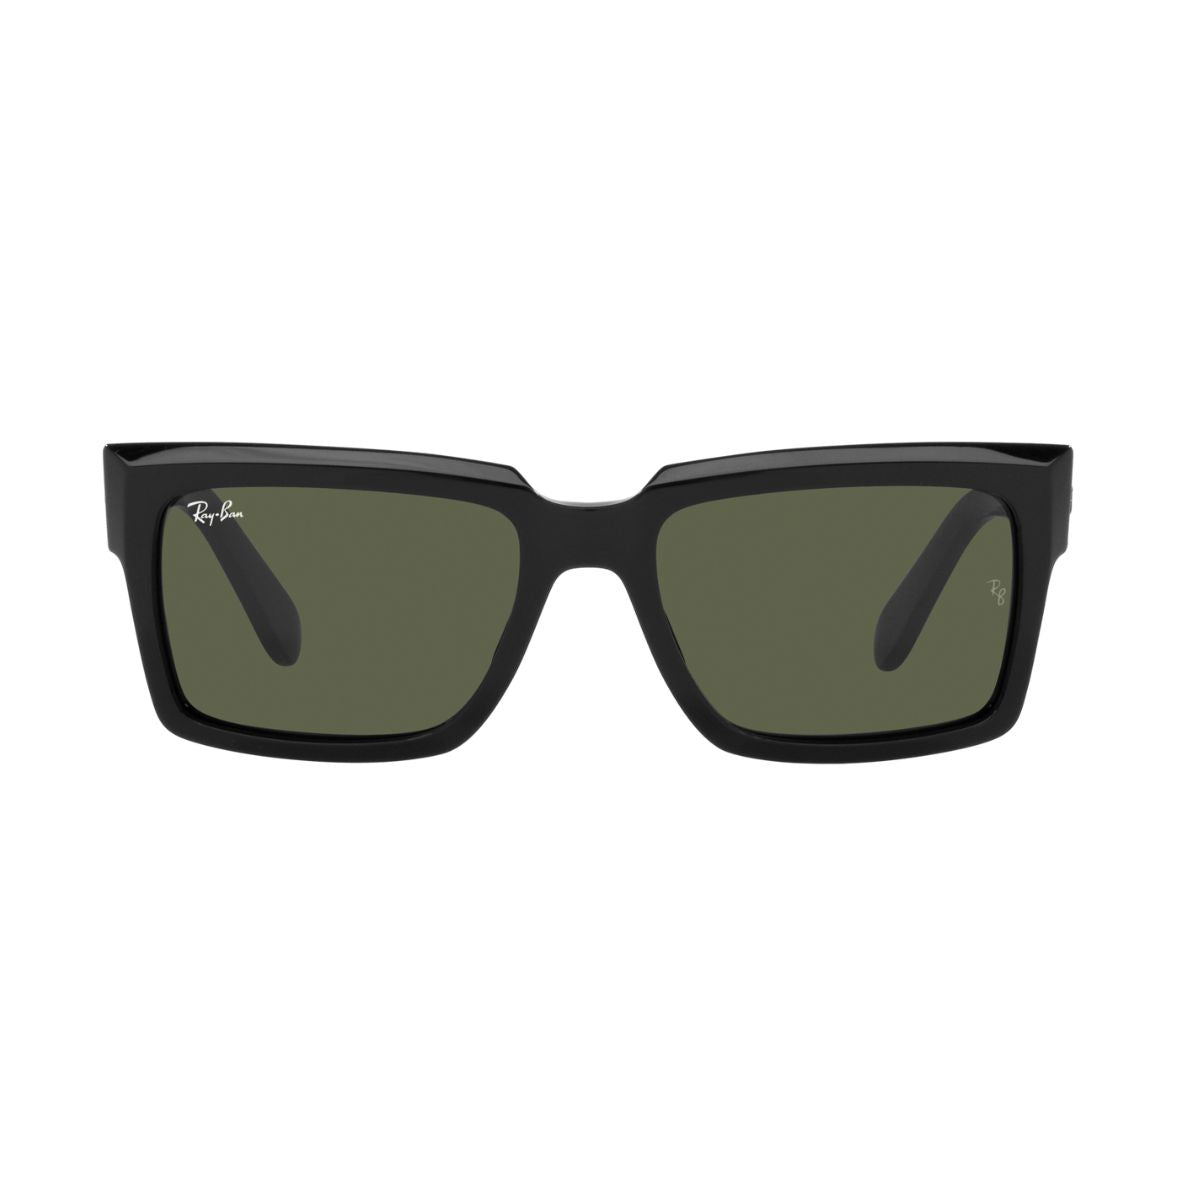 "Buy Rayban 2191 901/31 Sunglasses For Men's At Optorium"